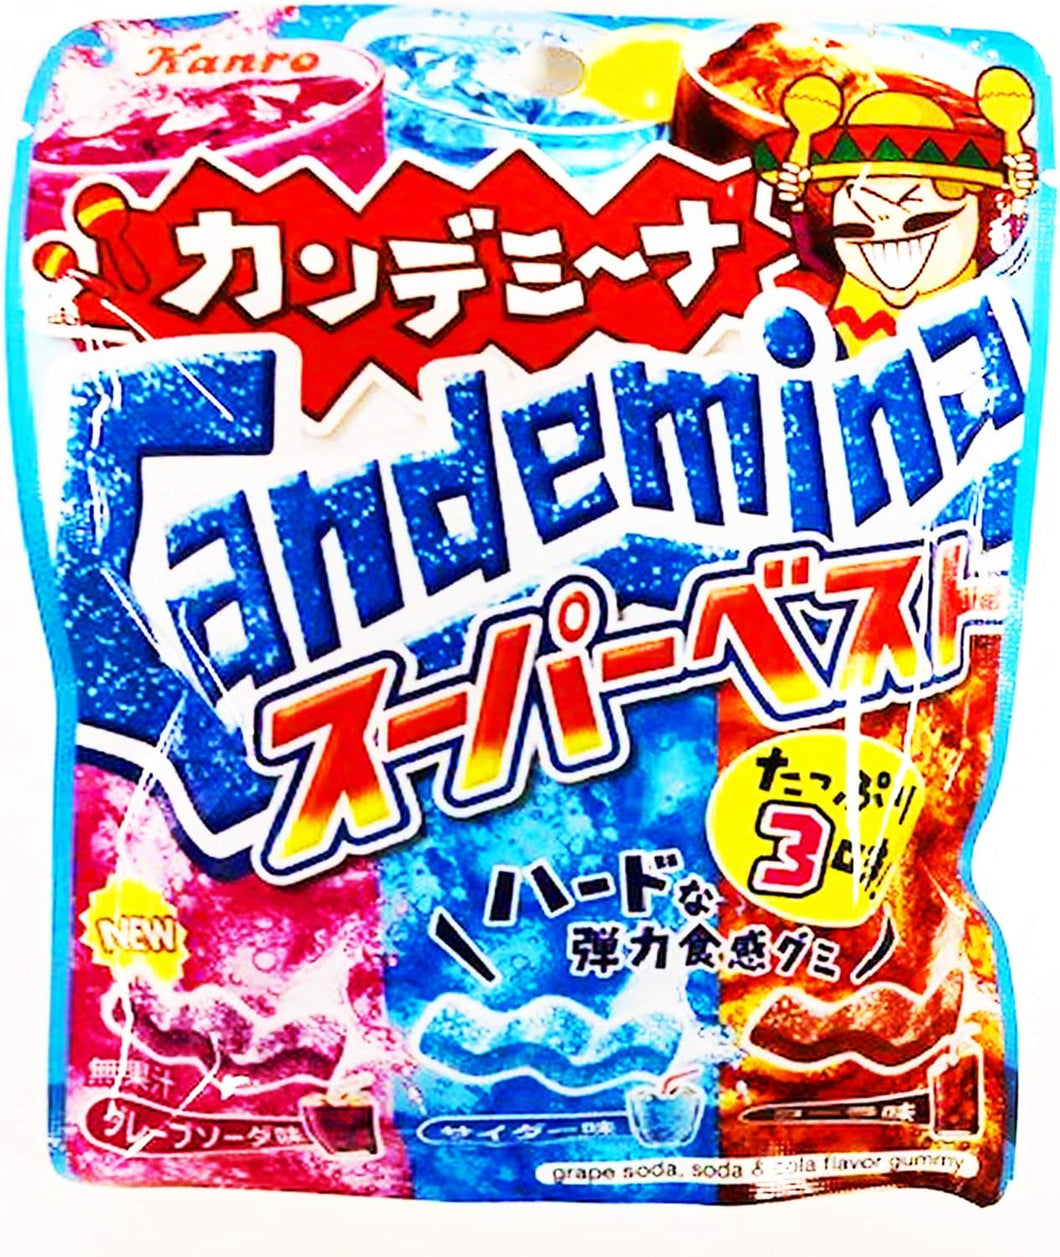 Kanro Candemina Gummy Selection　カンロ　カンデミーナ　コレクション